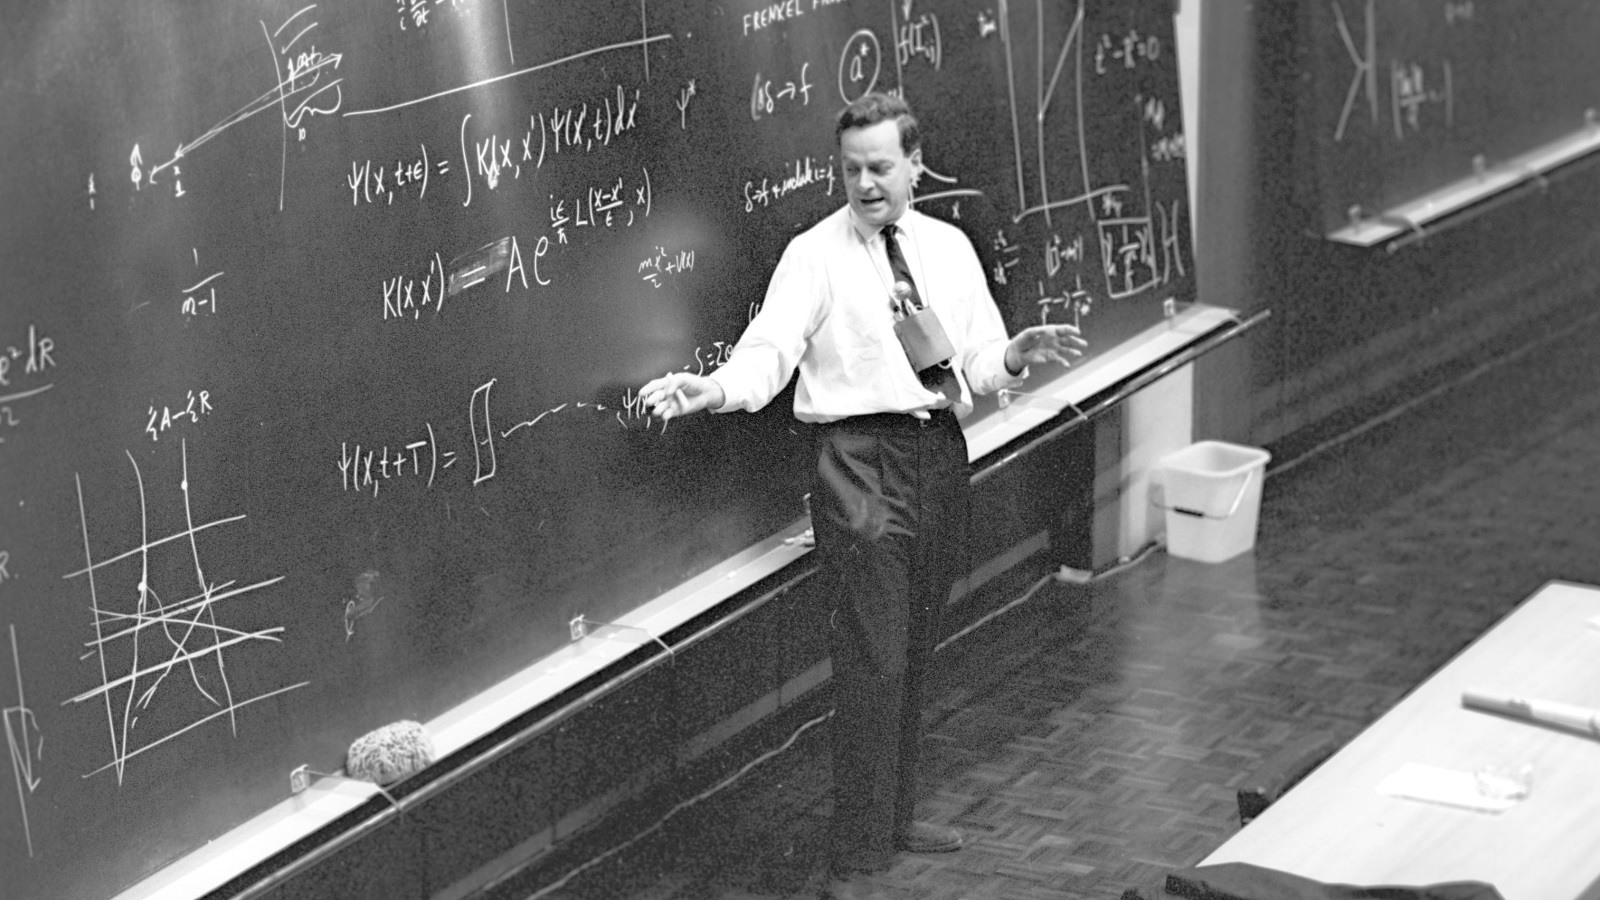 فاينمان لا يُفضّل العلم على الفلسفة، بل هو، بشكل أو بآخر، مقتنع تماما أن الفلسفة الجديدة (تلك التي تسمى الآن العلم) أفضل من سابقتها